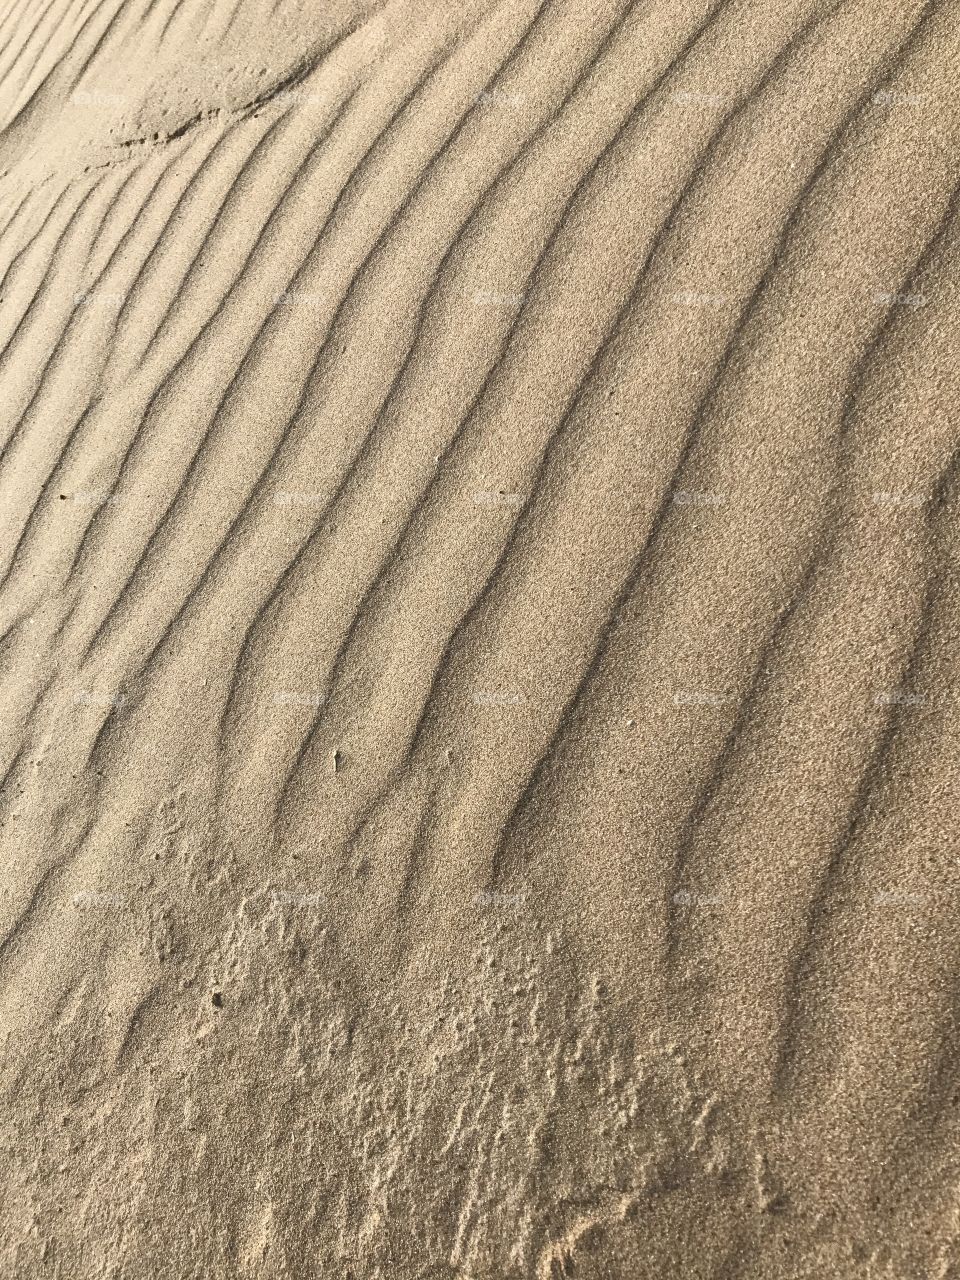 Sand, No Person, Desert, Wasteland, Dune